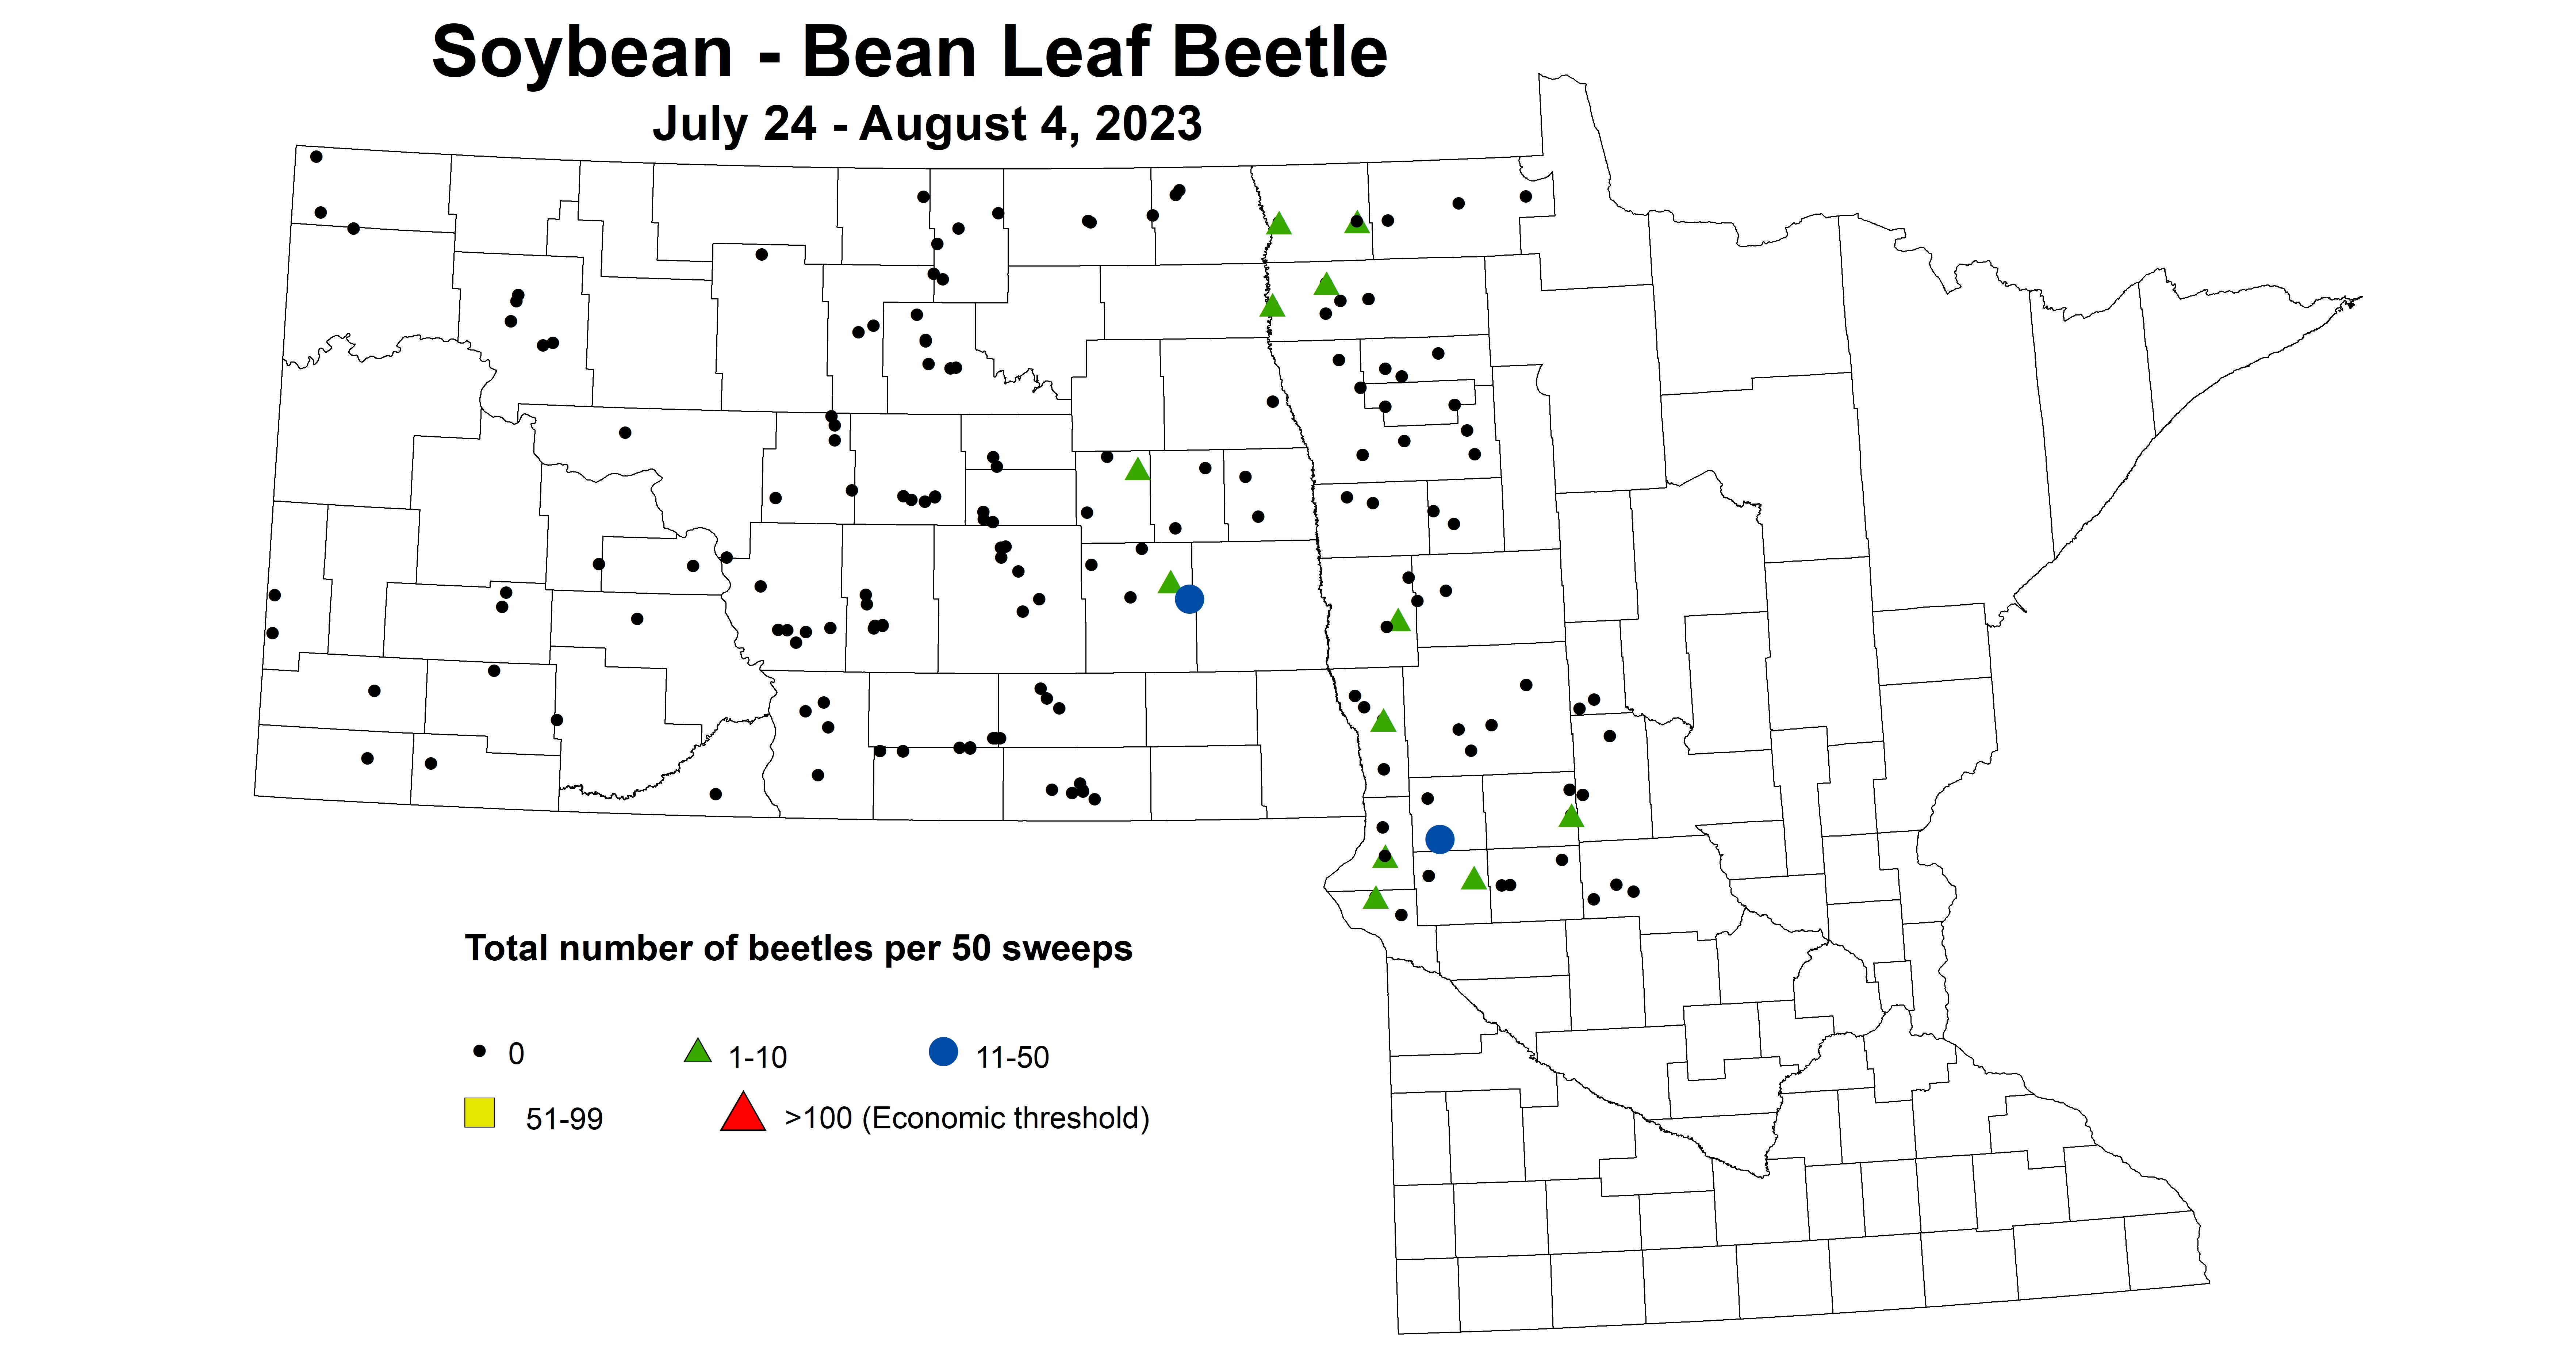 soybean BLB total number of beetles per 50 sweeps 7.24-8.4 2023